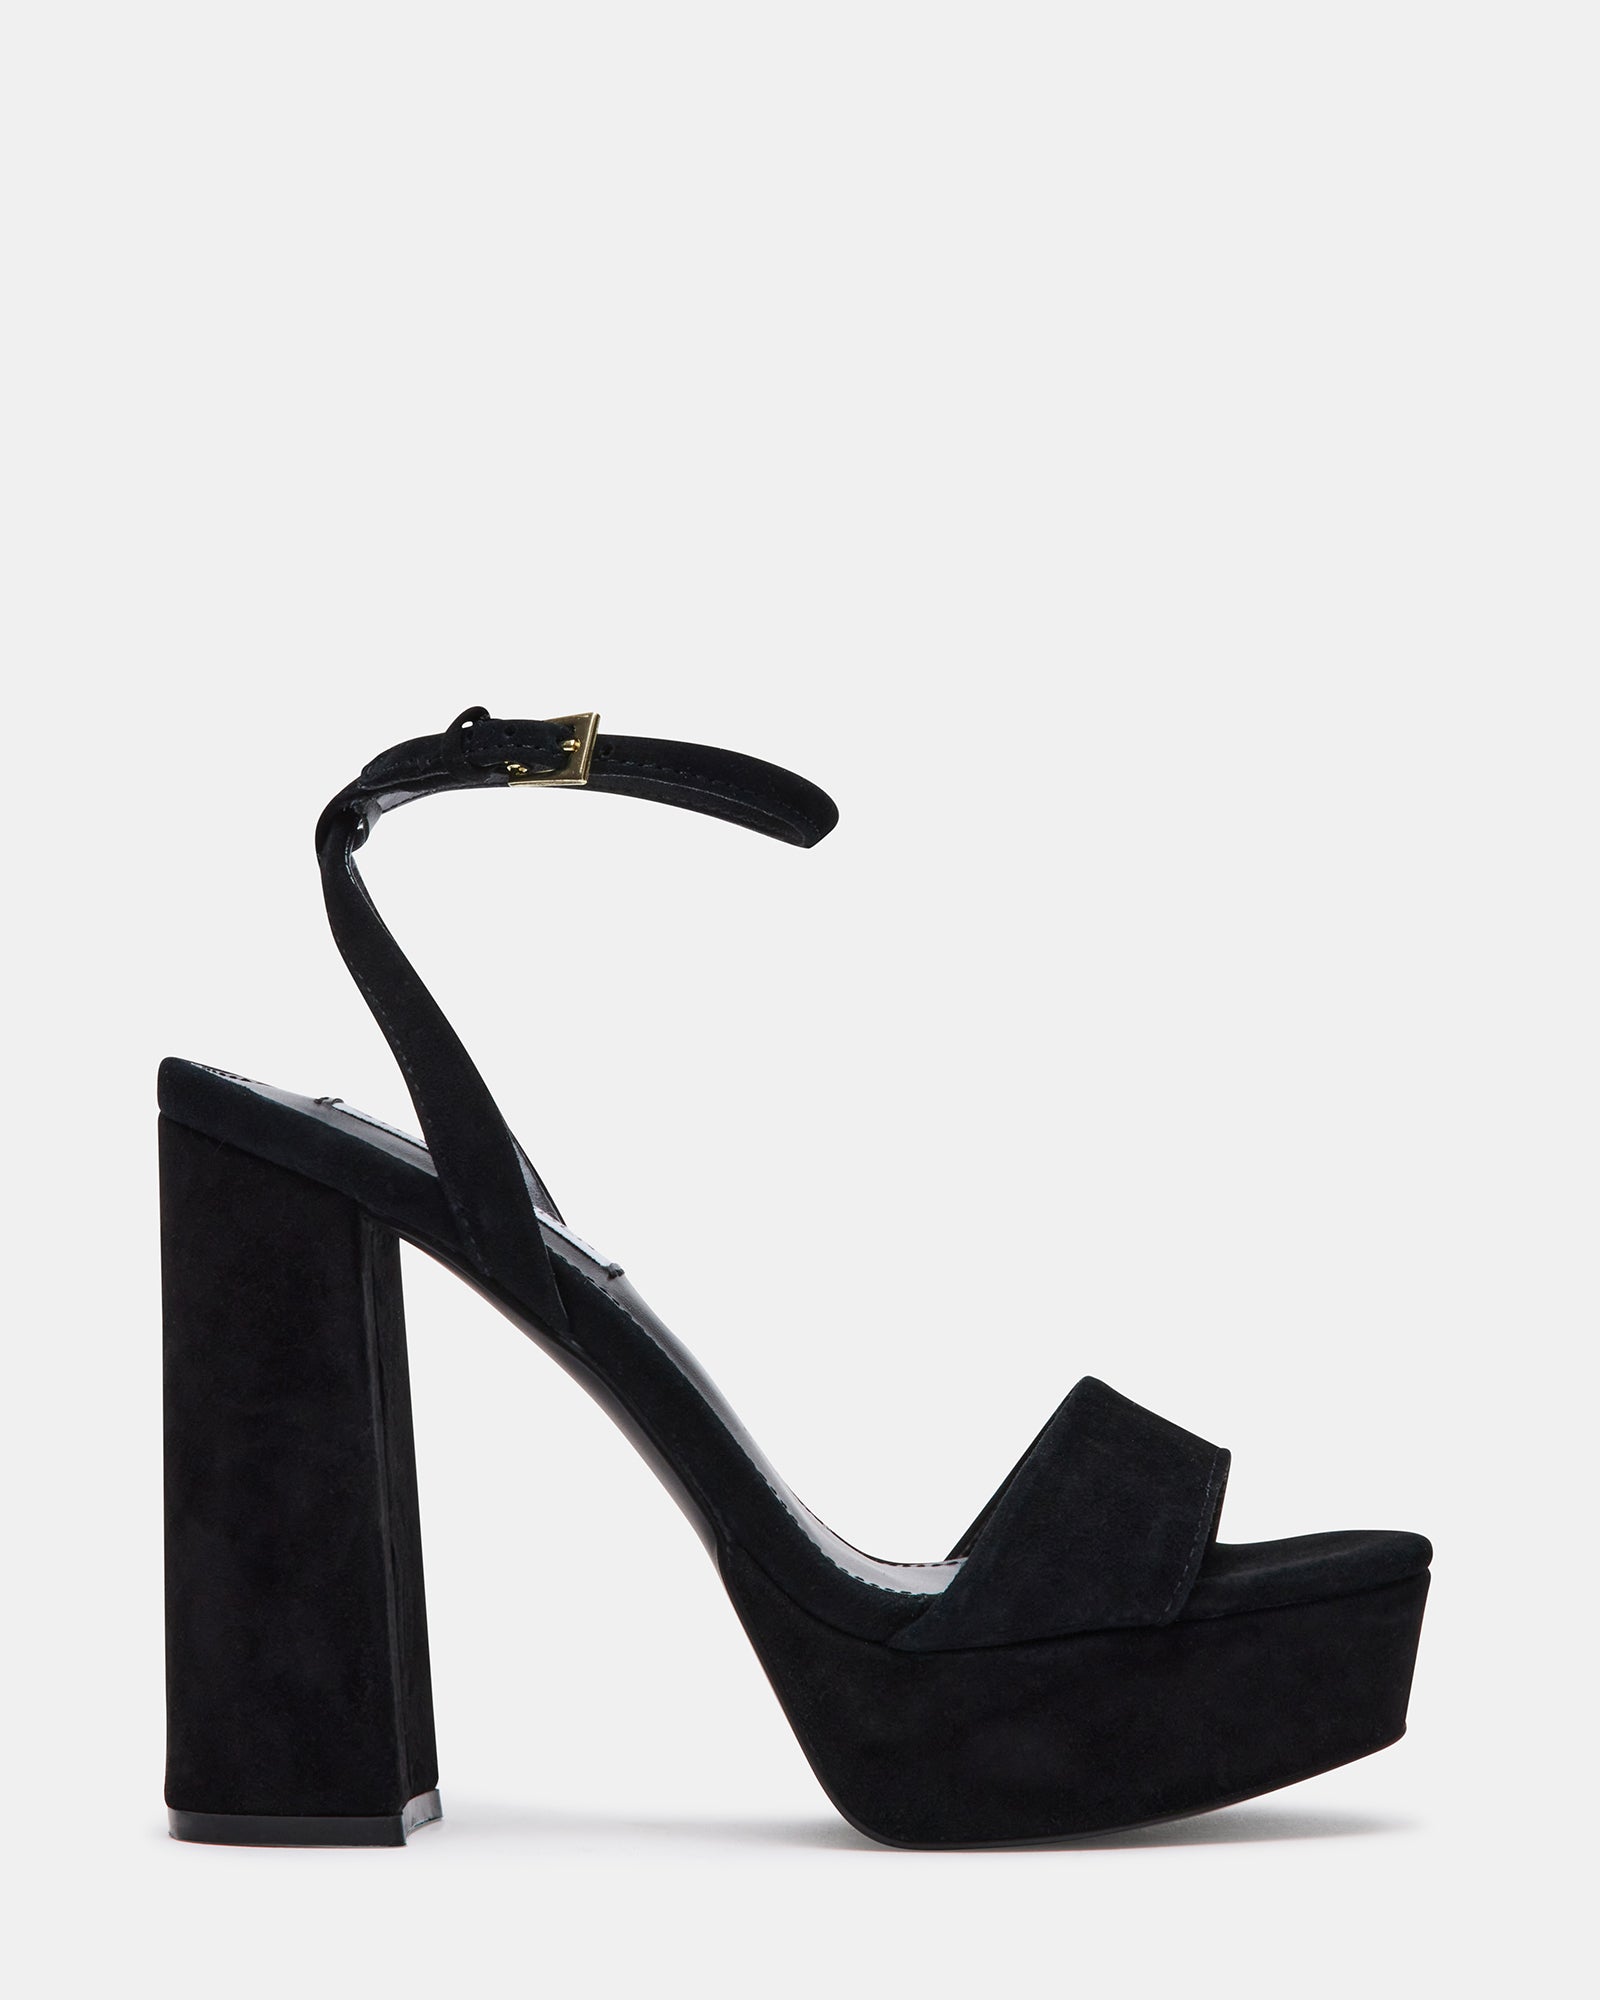 Cute Floral Heels - Ankle Strap Heels - Dress Sandals - $35.00 - Lulus